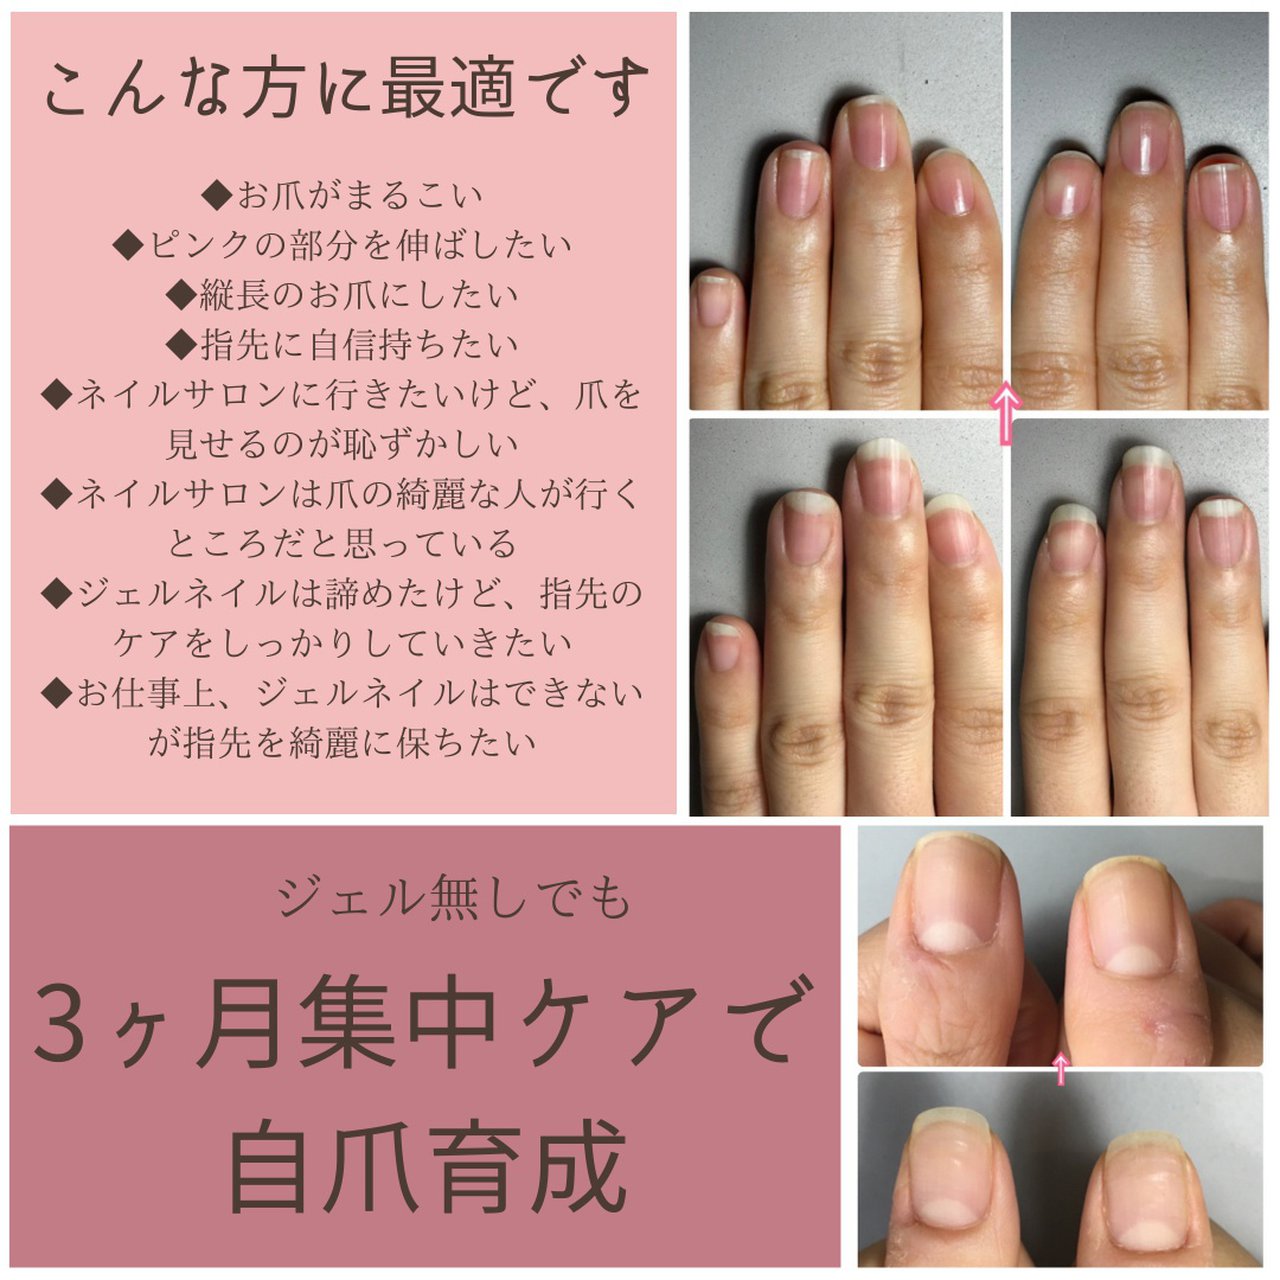 美爪育成nail Salon Jouet のネイルデザイン No ネイルブック